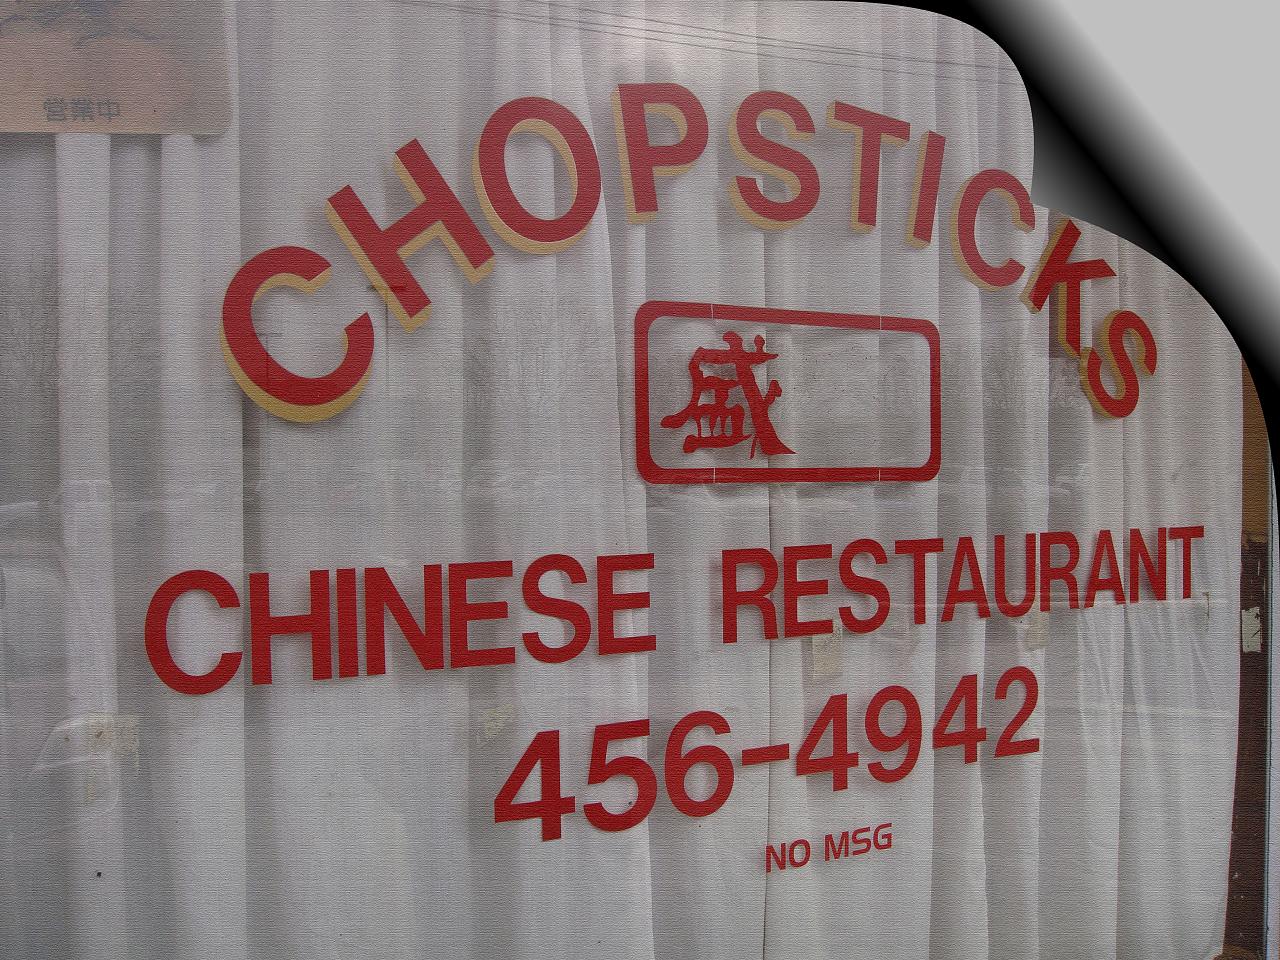 Chopsticks closed